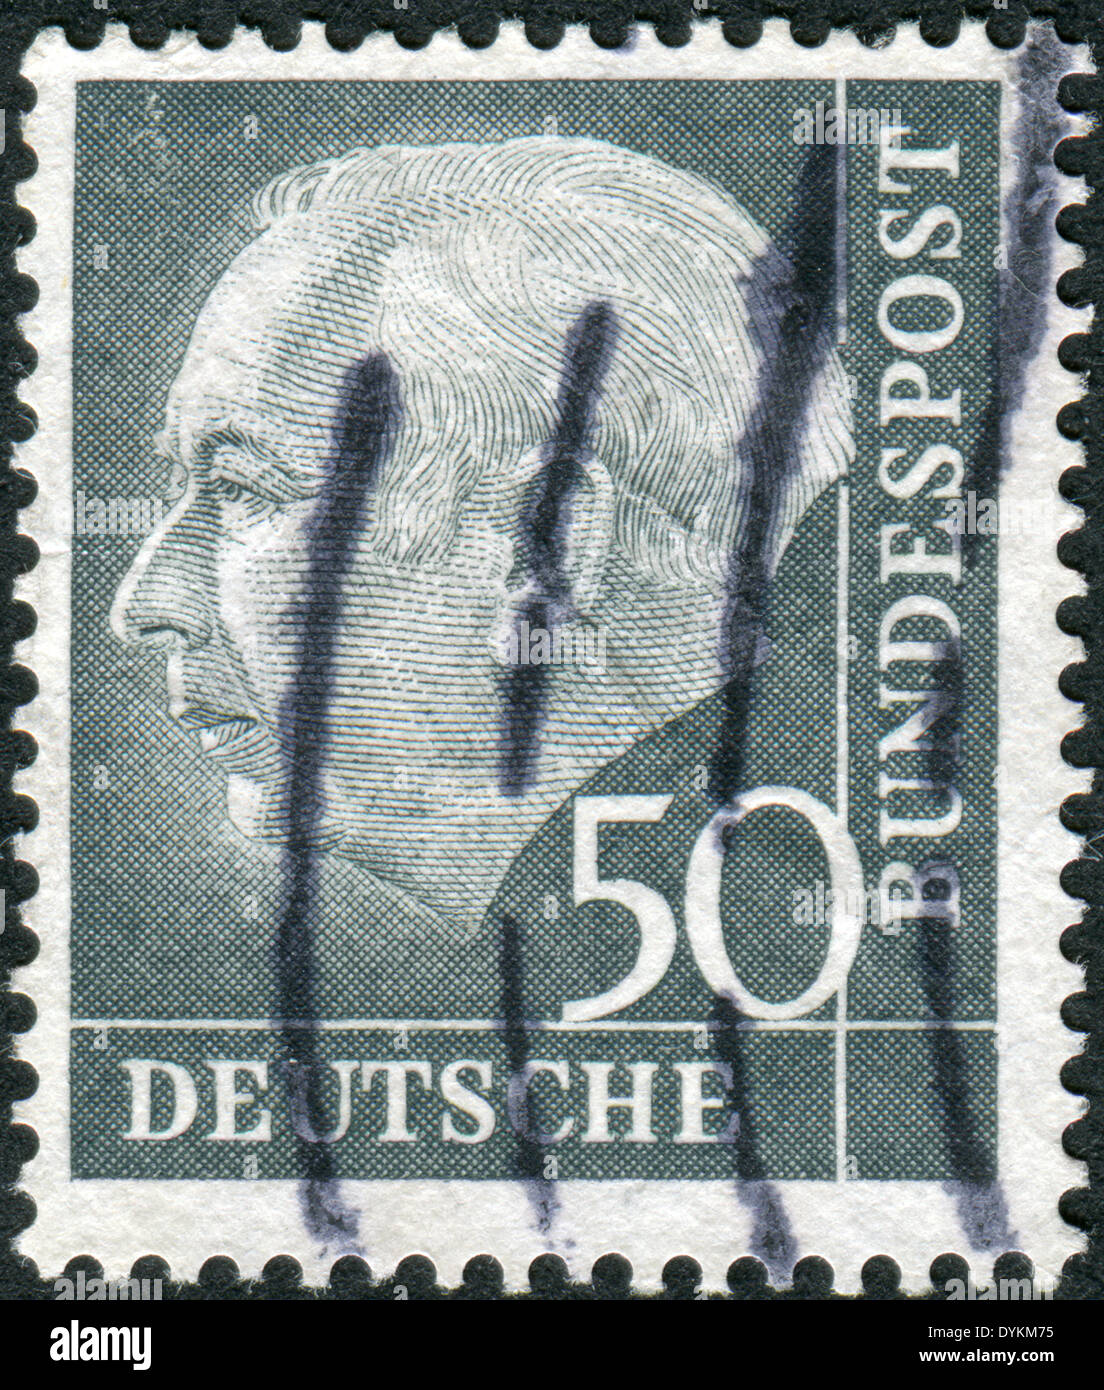 Briefmarke gedruckt in Deutschland, zeigt der 1. Präsident der Bundesrepublik Deutschland, Theodor Heuss Stockfoto